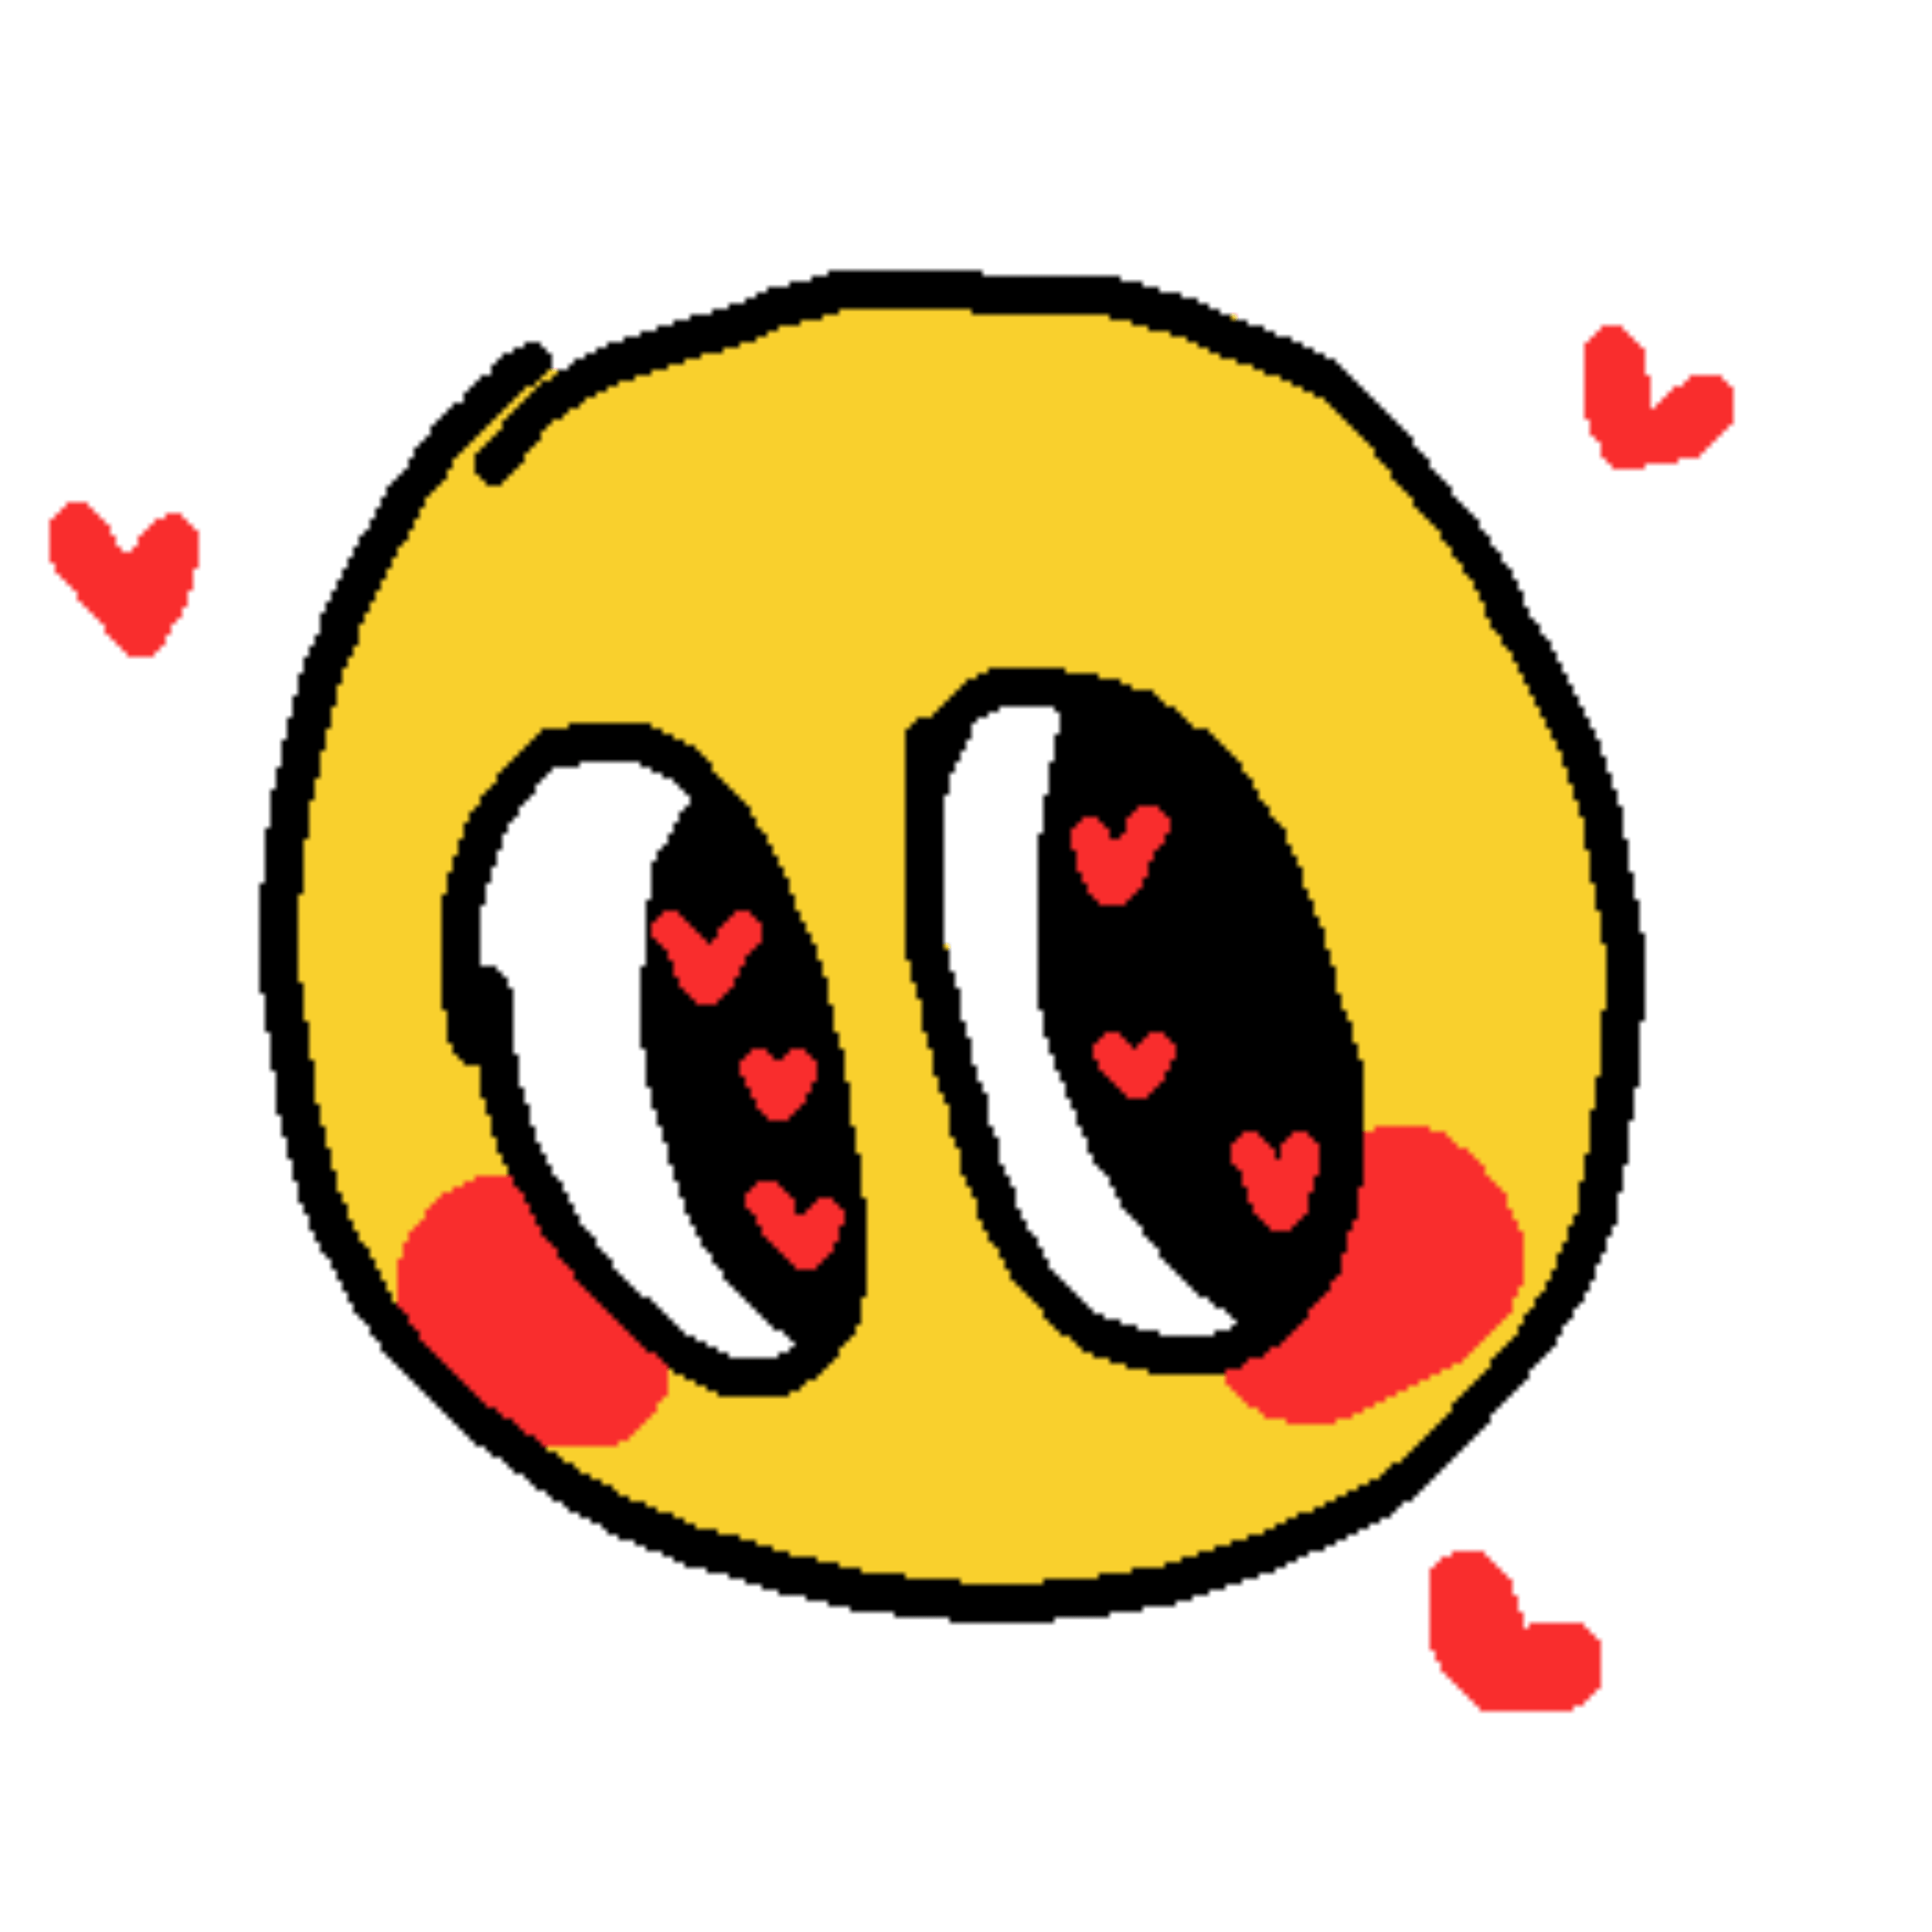 Blushing Emoji PNG File